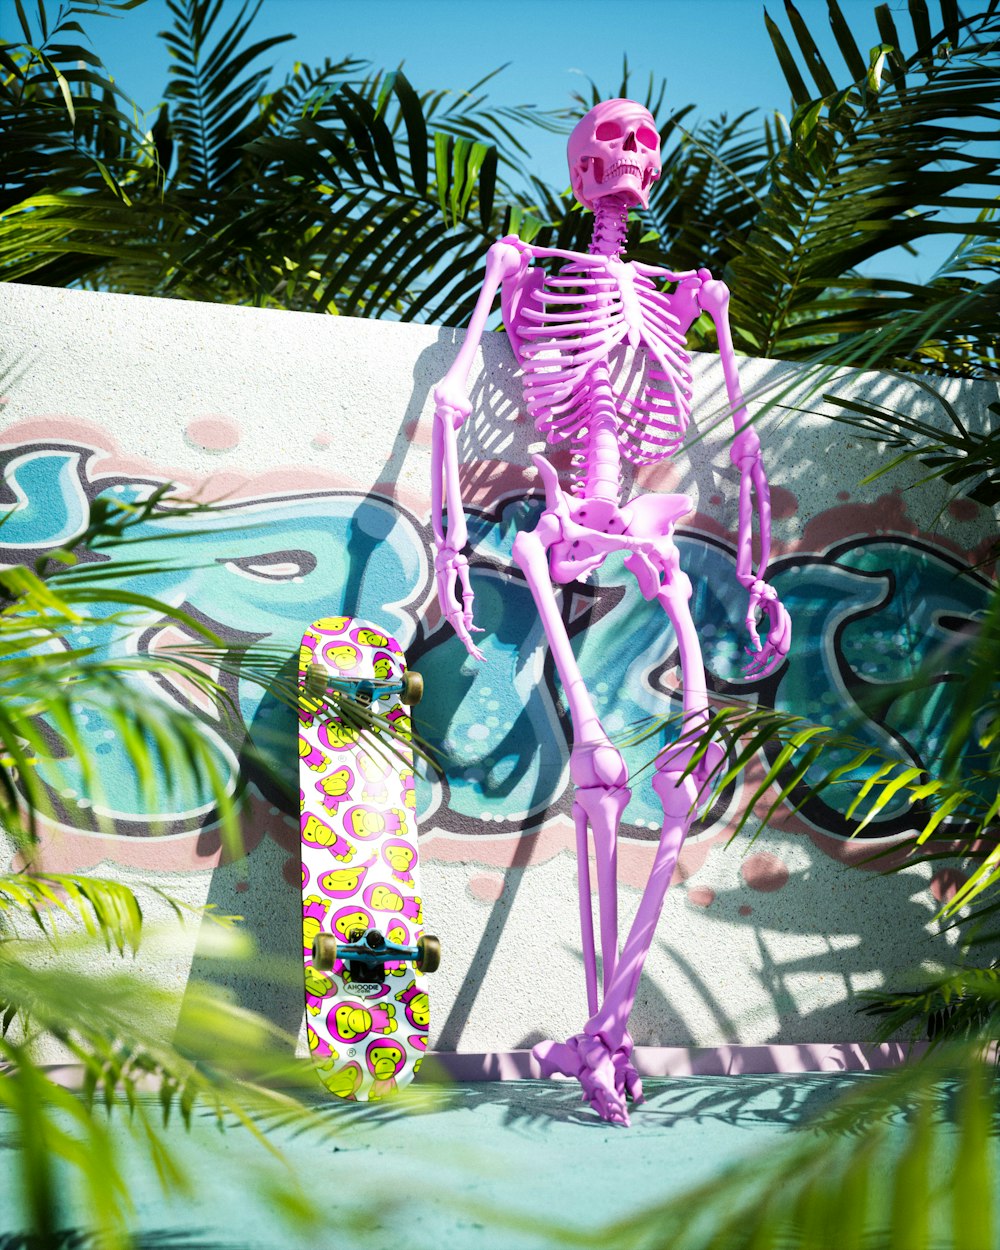 スケートボードの上に座っているピンクの骸骨